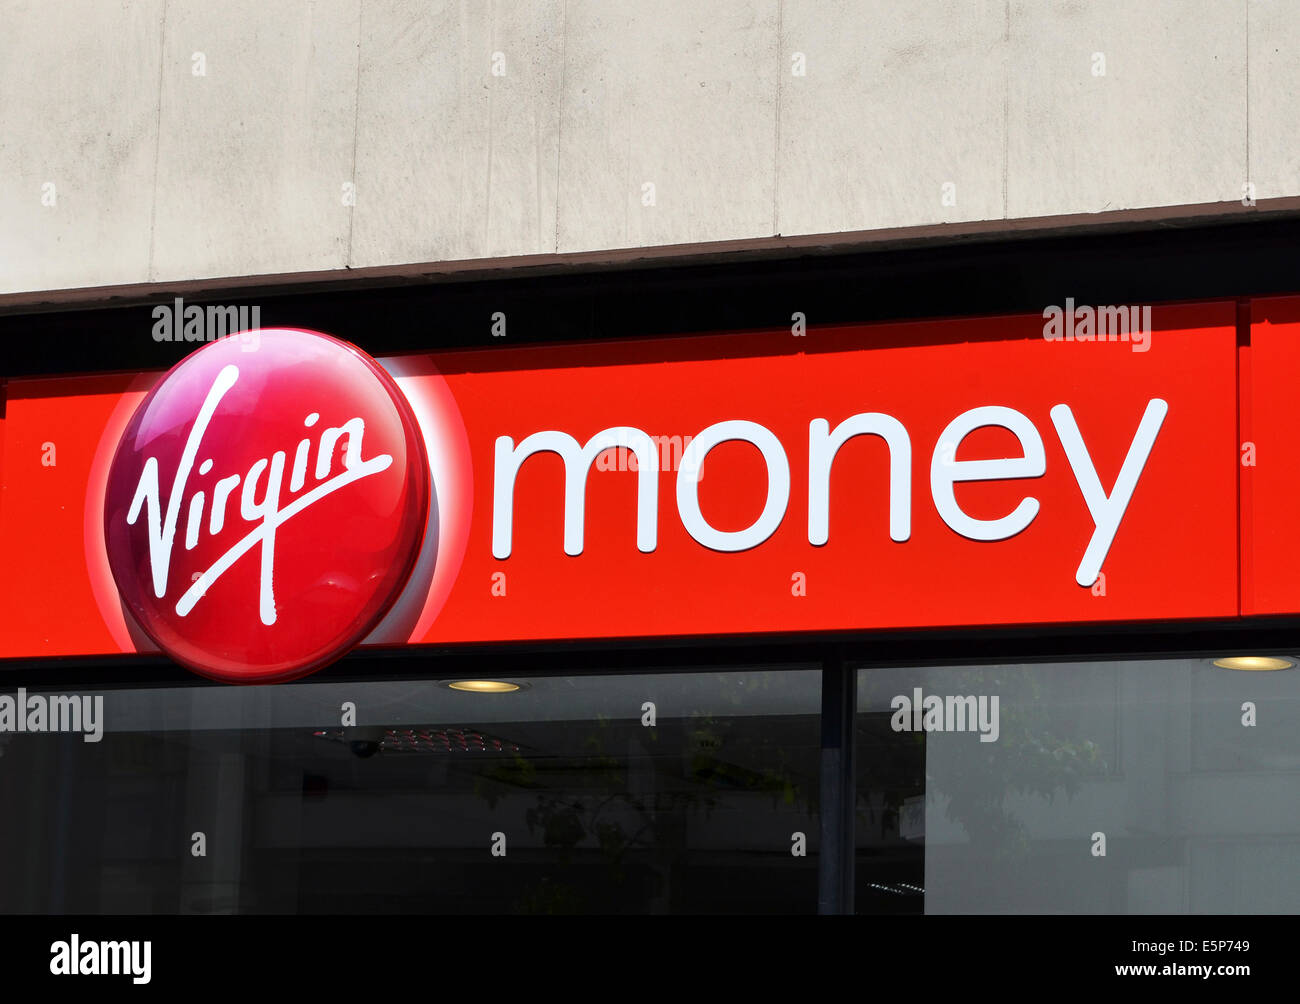 a virgin money branch Stock Photo